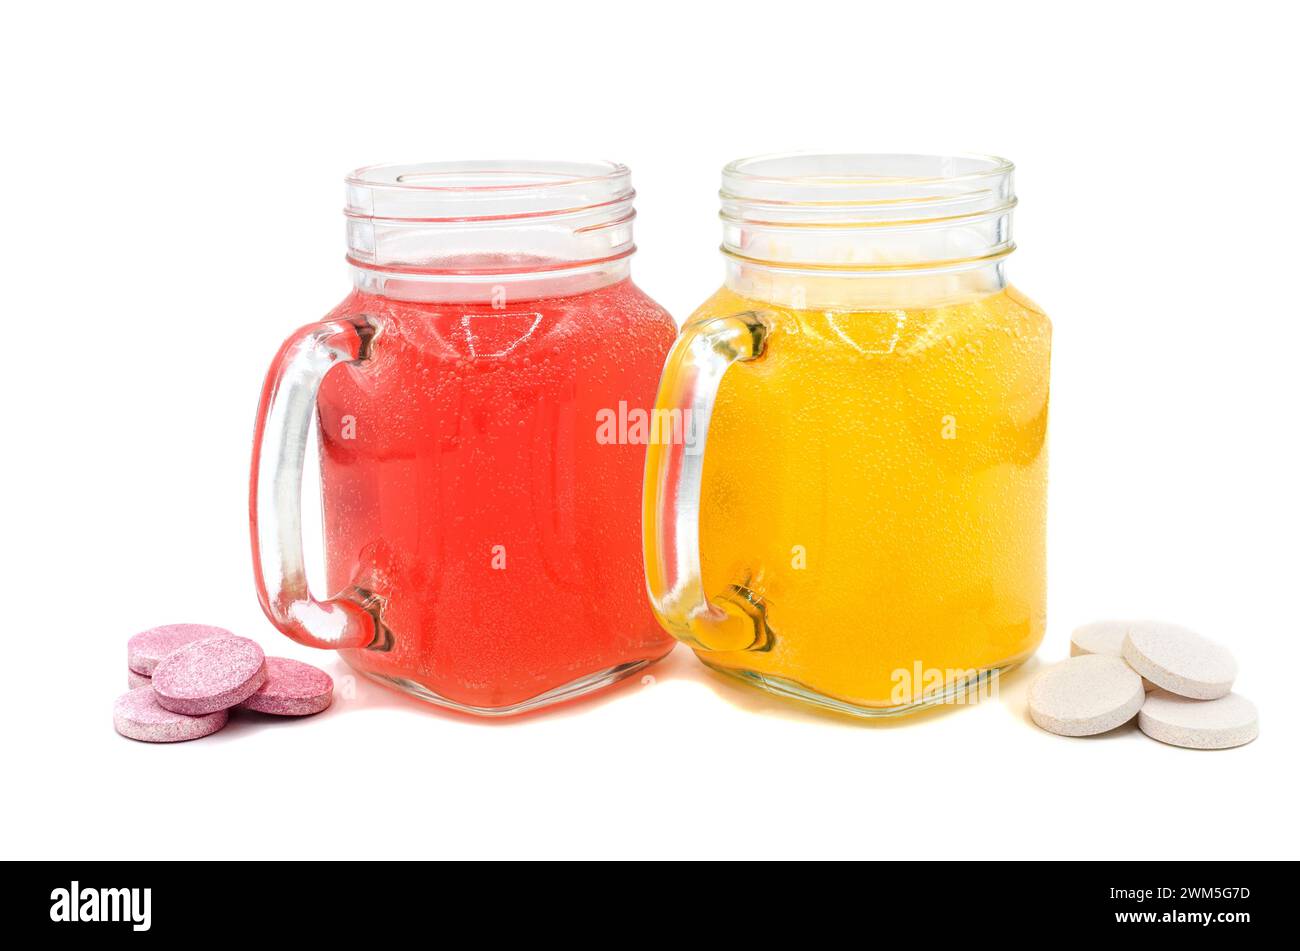 Brausetabletten in einem Glas Wasser-Nahaufnahme auf isoliertem Hintergrund. Vitamin-C-Tablette. Gesundheitskonzept. Stockfoto